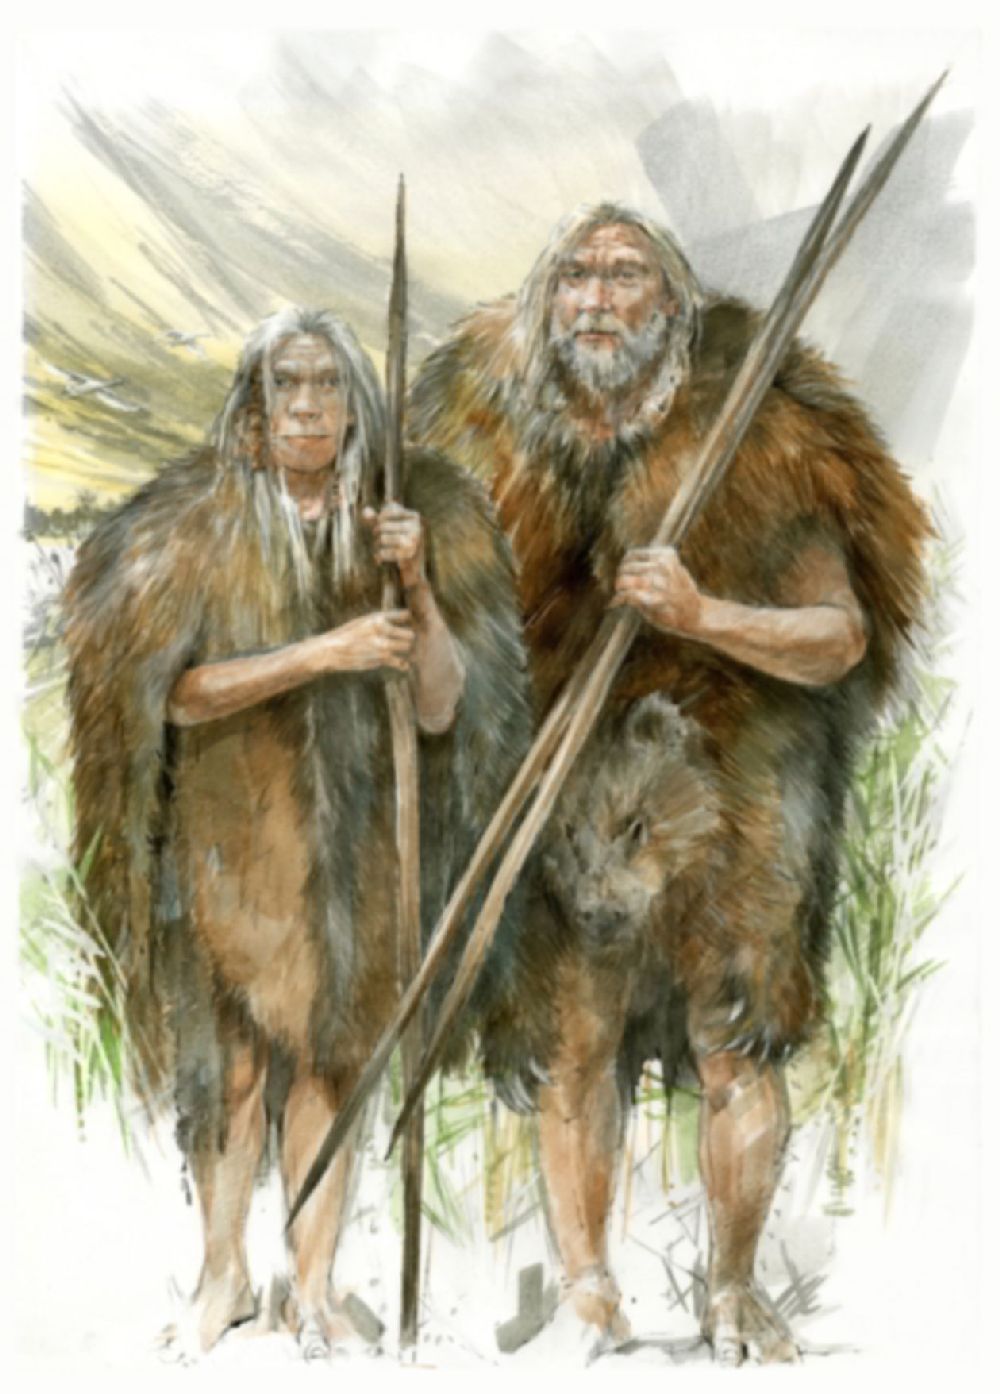 Ein Homo heidelbergensis paar, steht Arm in Arm da. Beide halten einen Speer locker in der Hand.